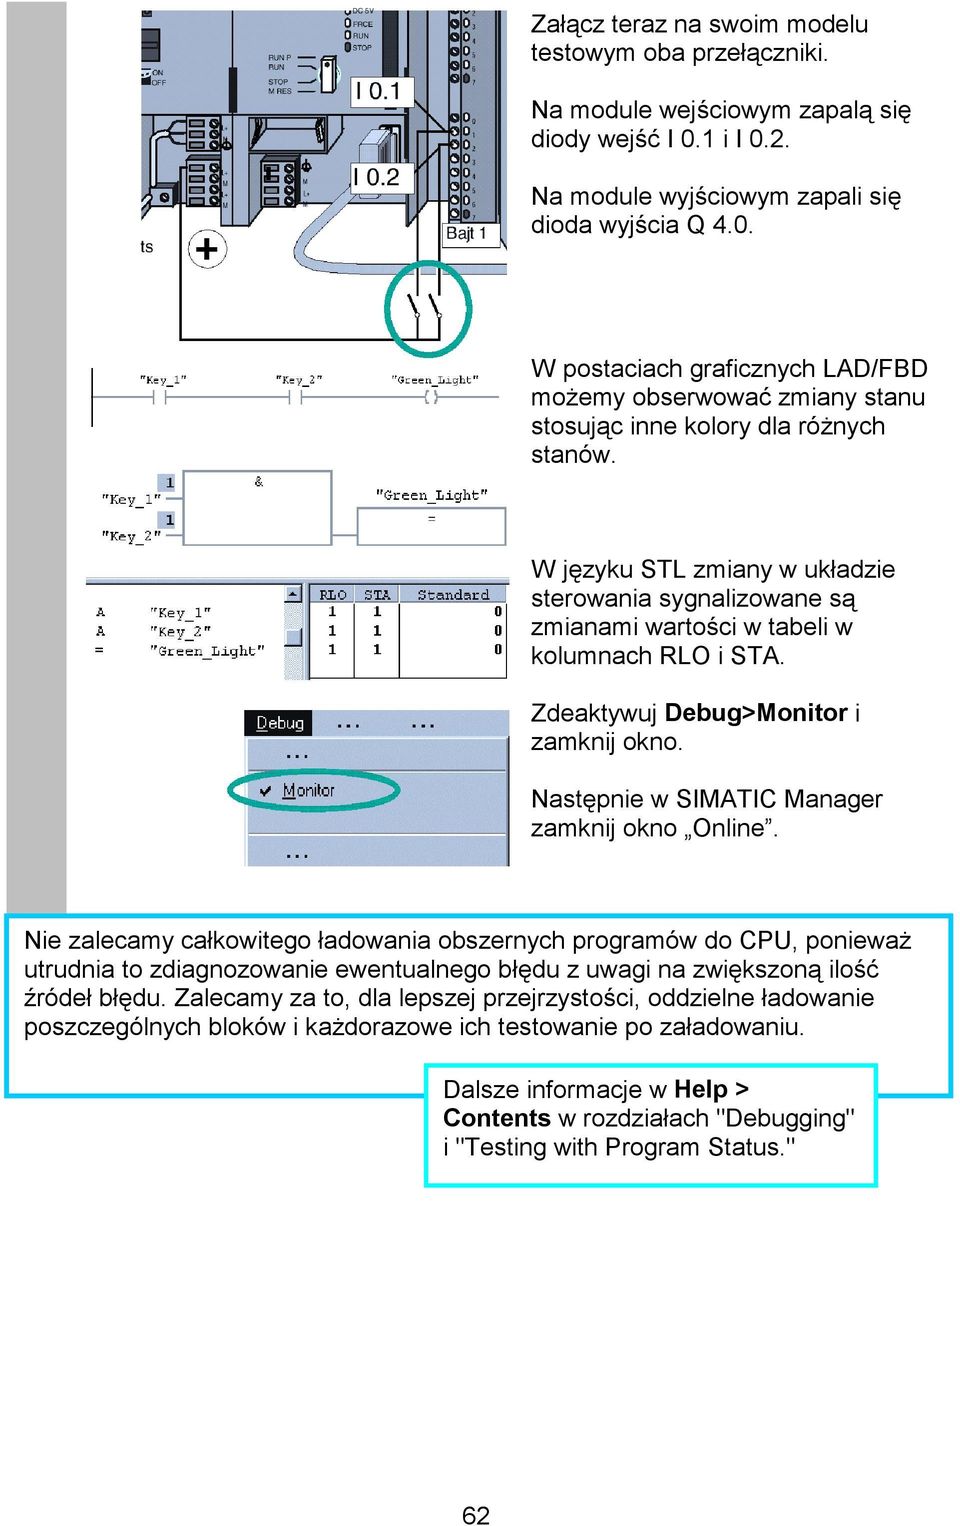 W języku STL zmiany w układzie sterowania sygnalizowane są zmianami wartości w tabeli w kolumnach RLO i STA. Zdeaktywuj Debug>Monitor i zamknij okno. Następnie w SIMATIC Manager zamknij okno Online.